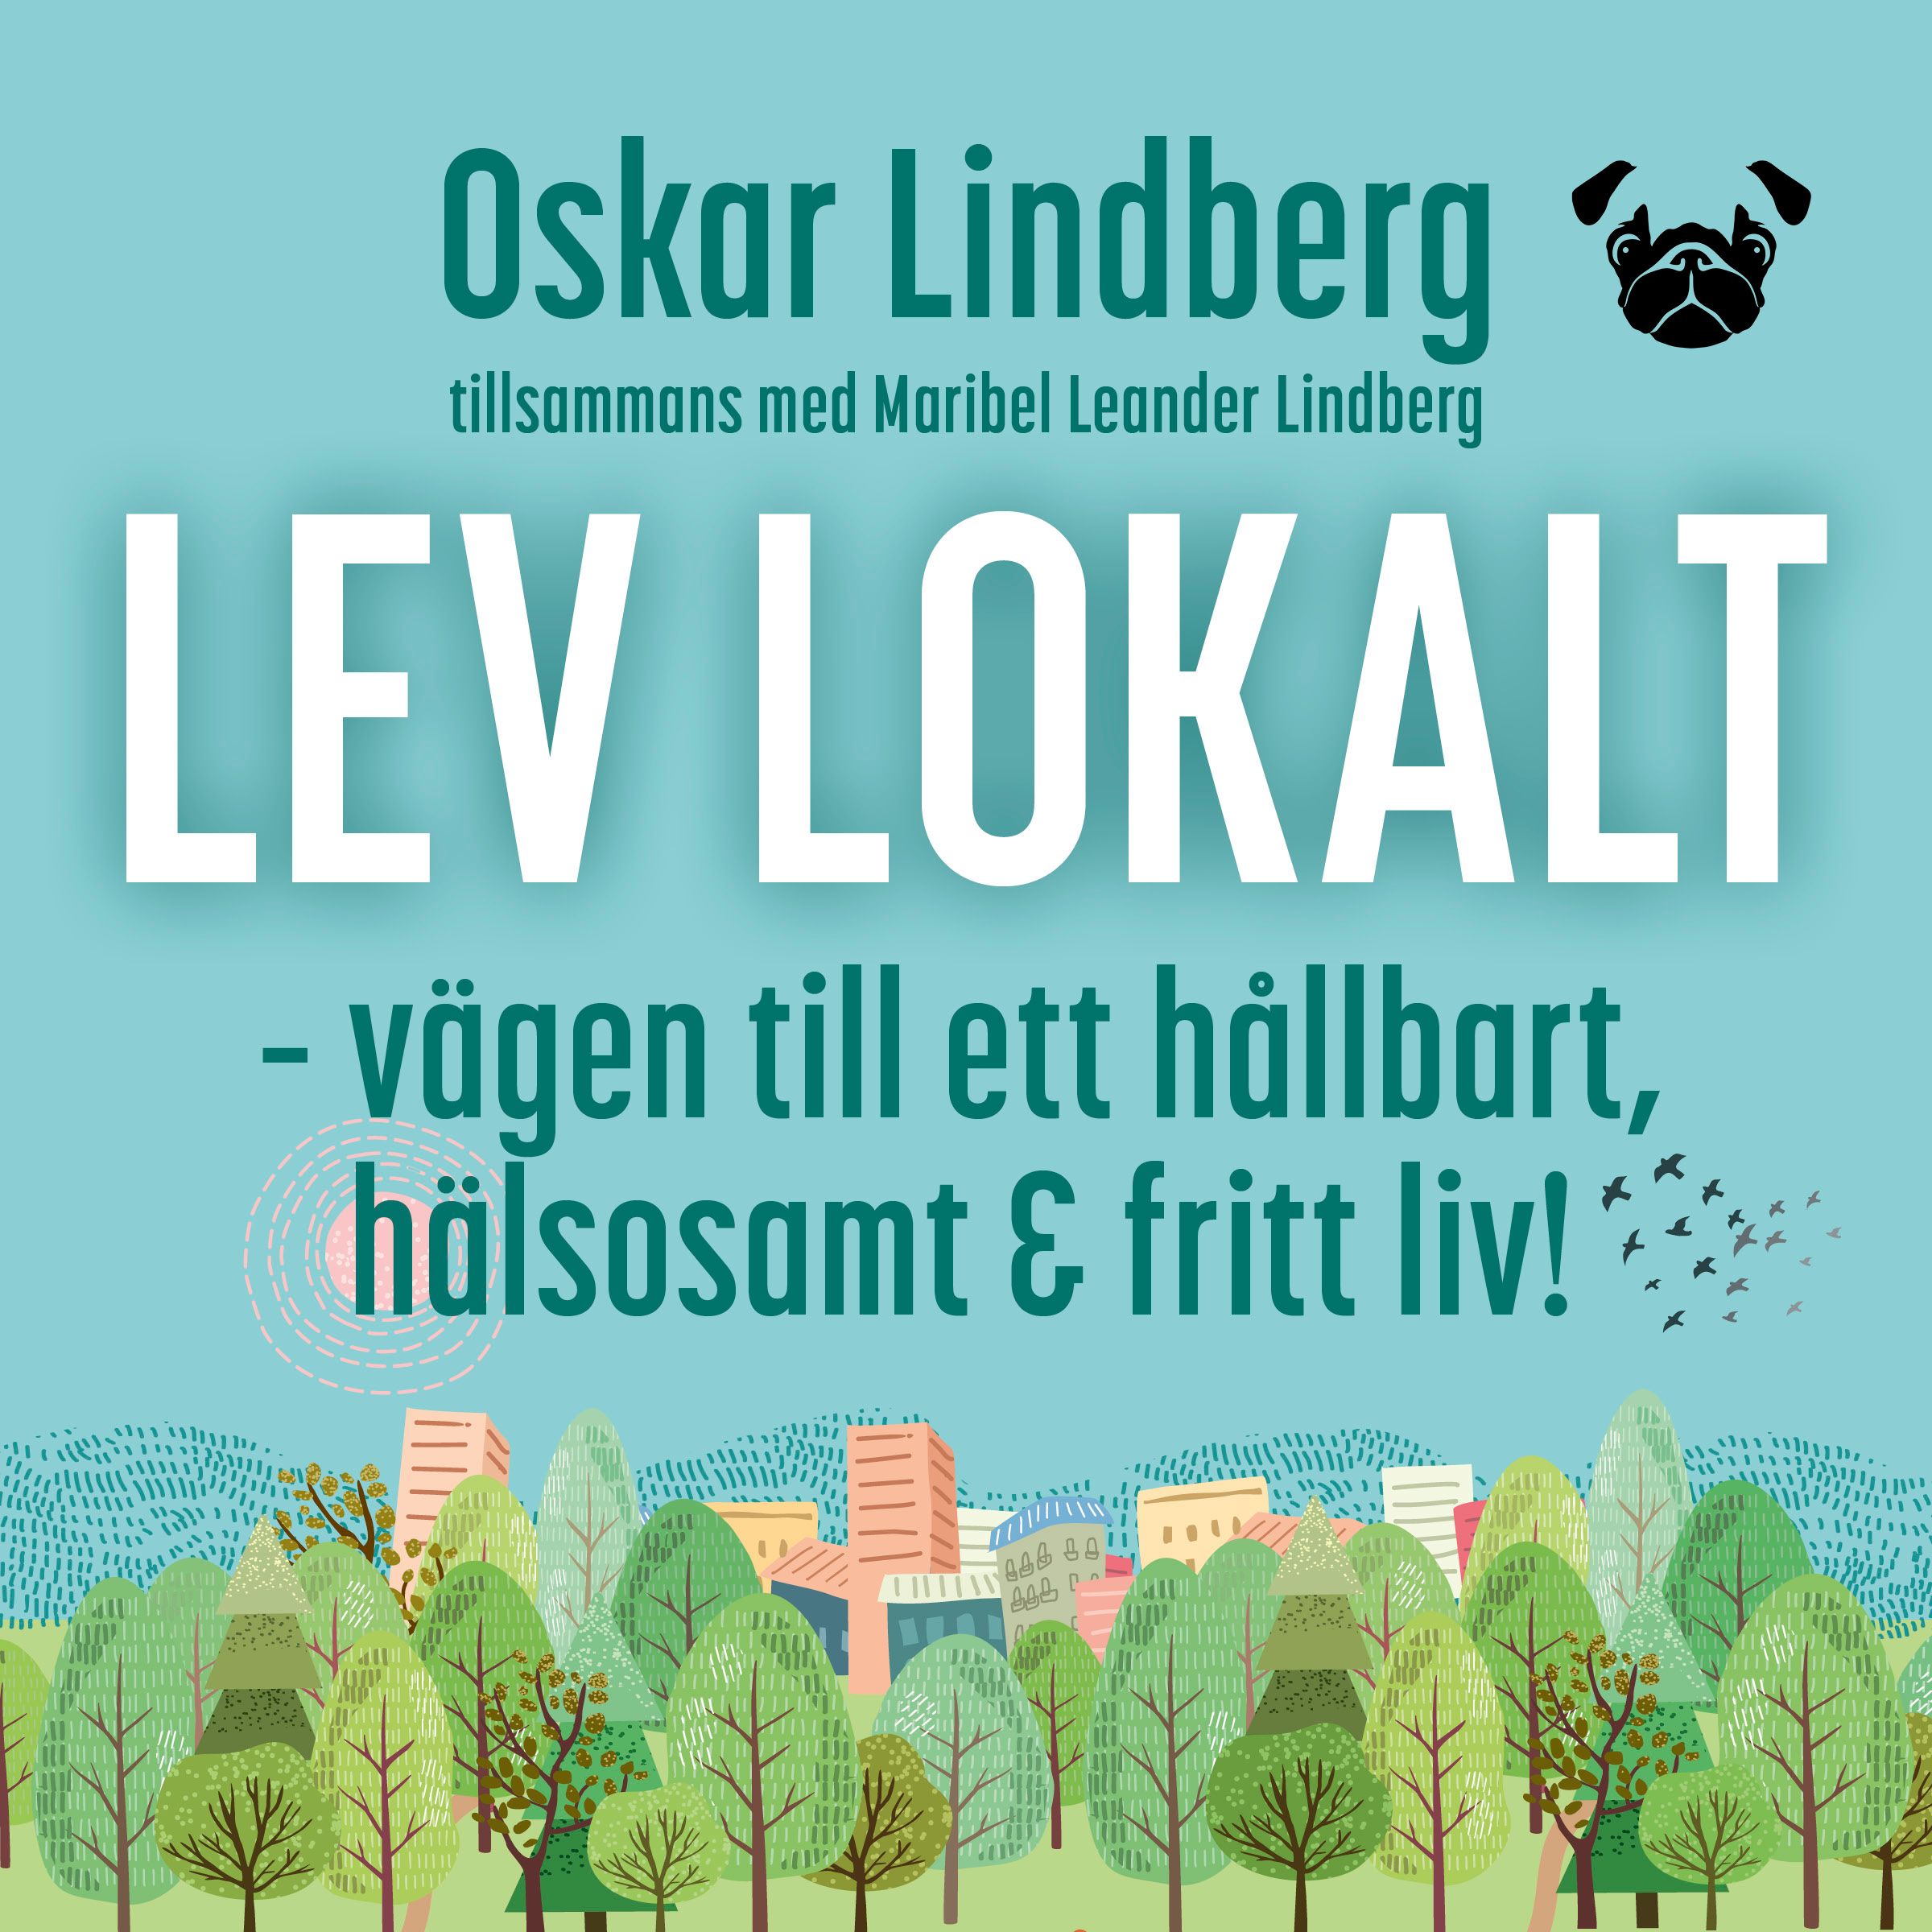 Lev lokalt – vägen till ett hållbart, hälsosamt och fritt liv!, audiobook by Oskar Lindberg